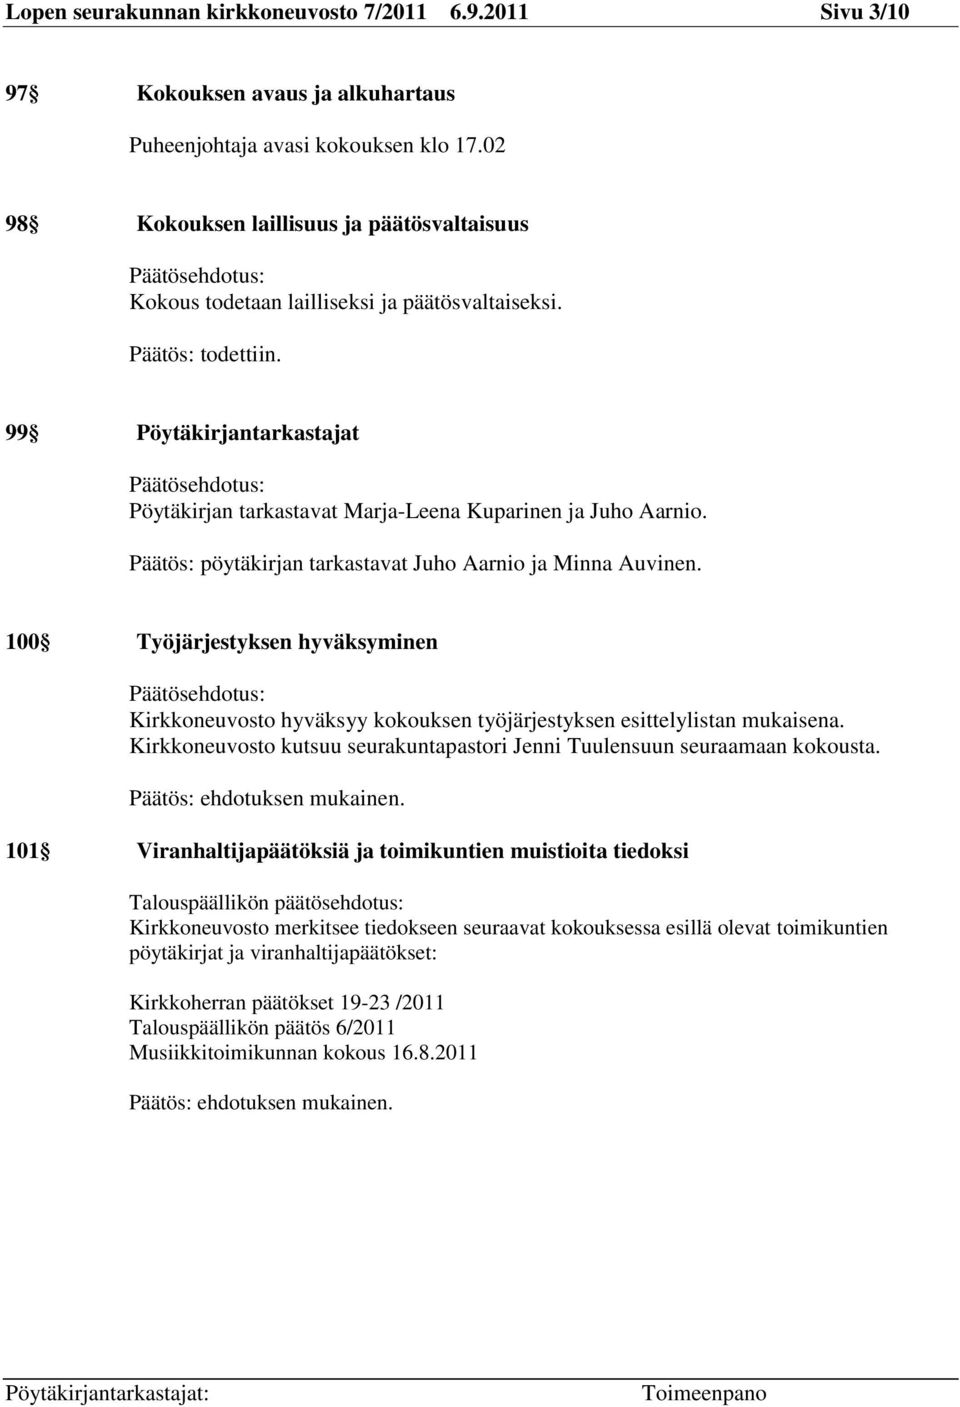 99 Pöytäkirjantarkastajat Päätösehdotus: Pöytäkirjan tarkastavat Marja-Leena Kuparinen ja Juho Aarnio. Päätös: pöytäkirjan tarkastavat Juho Aarnio ja Minna Auvinen.